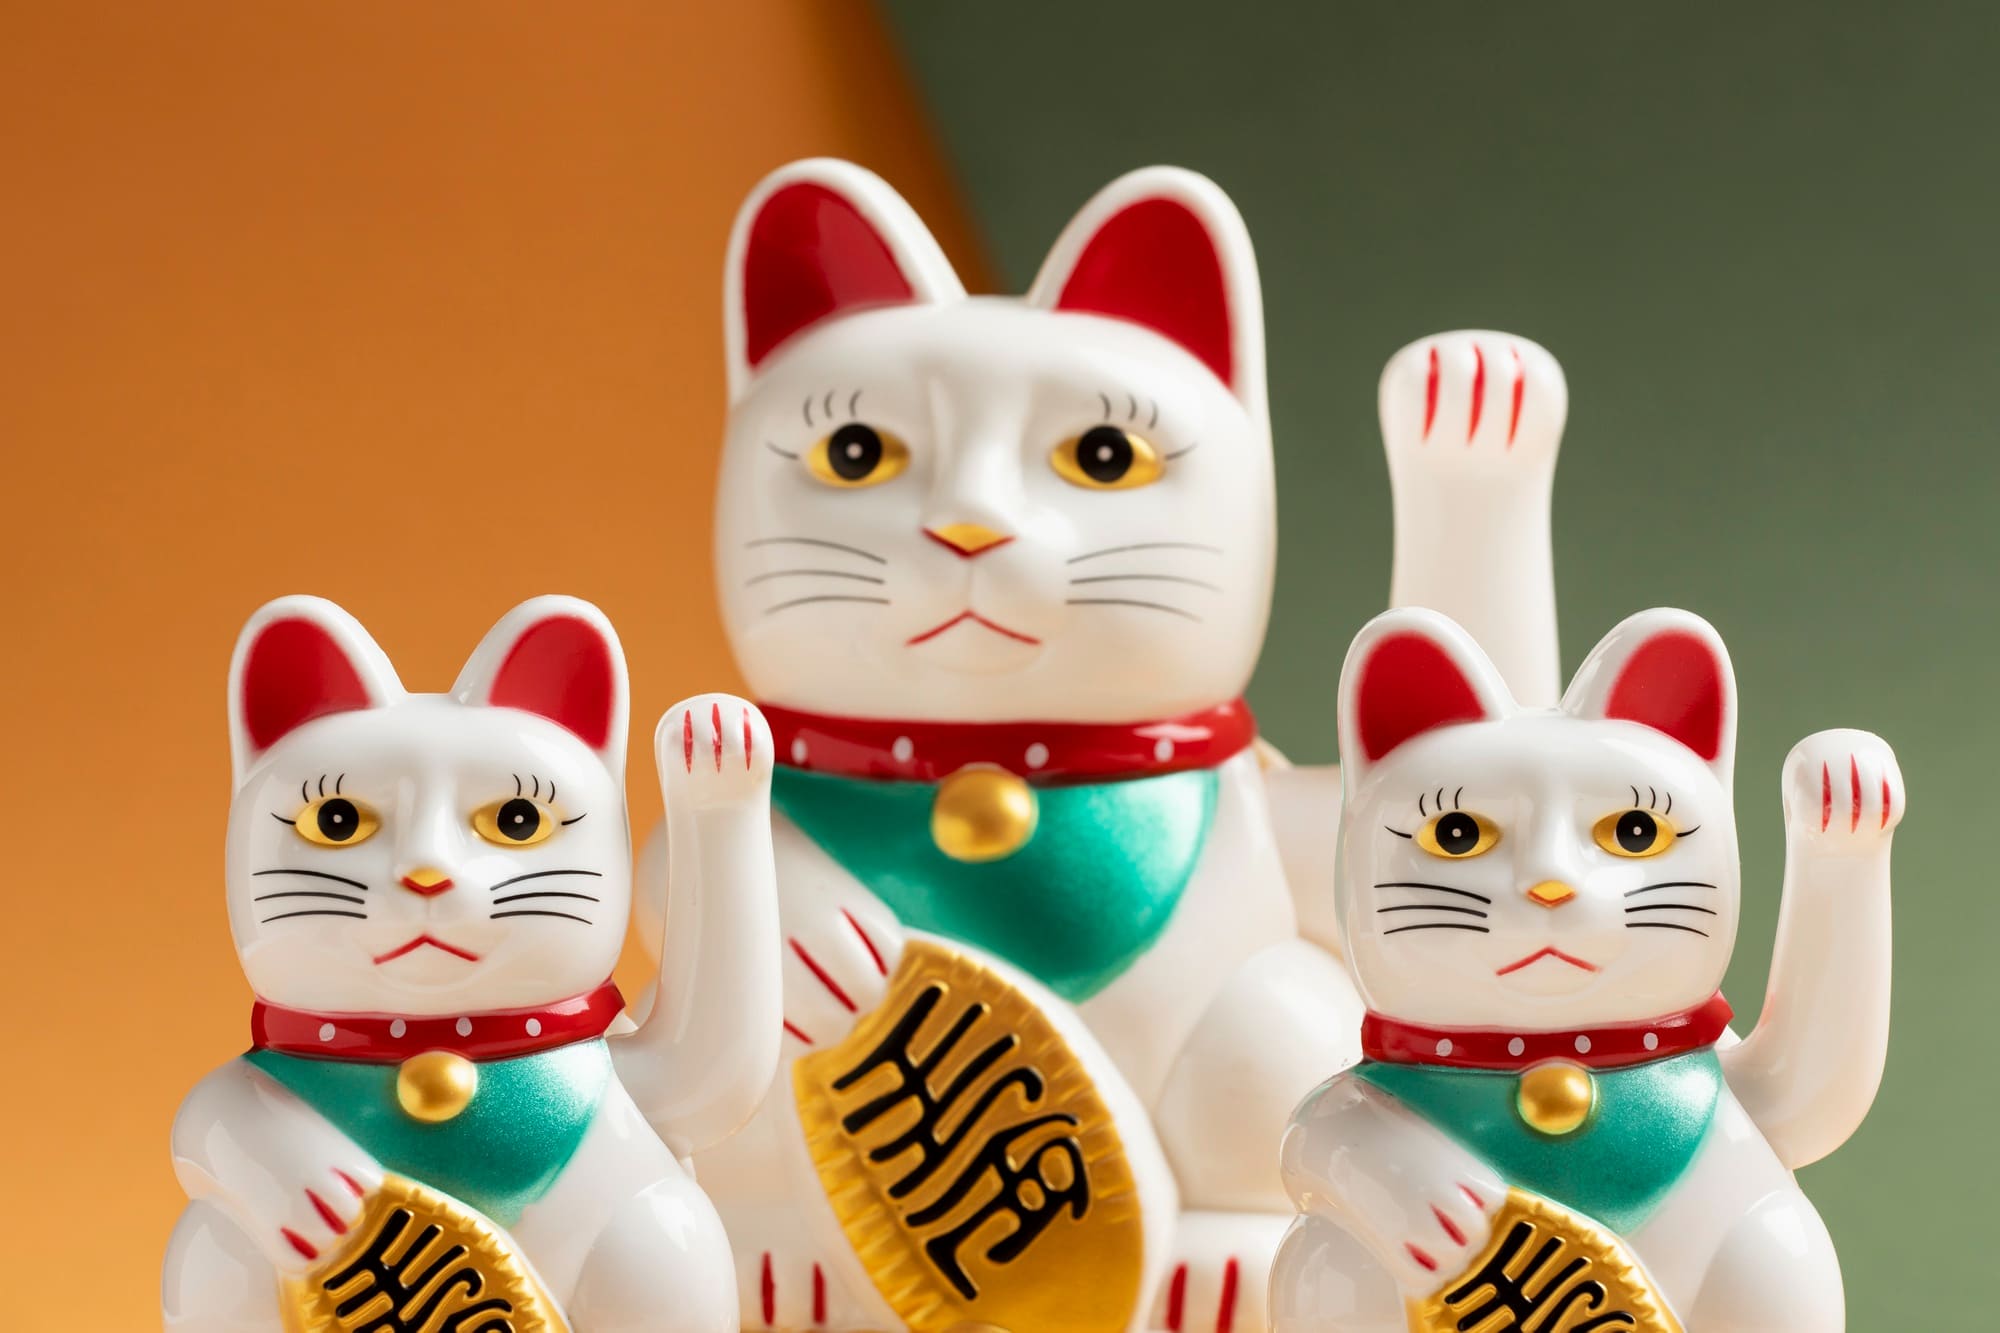 MANEKI-NEKO แมวกวัก เครื่องราง จาก ประเทศญี่ปุ่น เครื่องรางยอดนิยมของญี่ปุ่น ที่เชื่อกันว่าจะมาซึ่งความโชคดี มั่งคั่ง และโชคลาภ